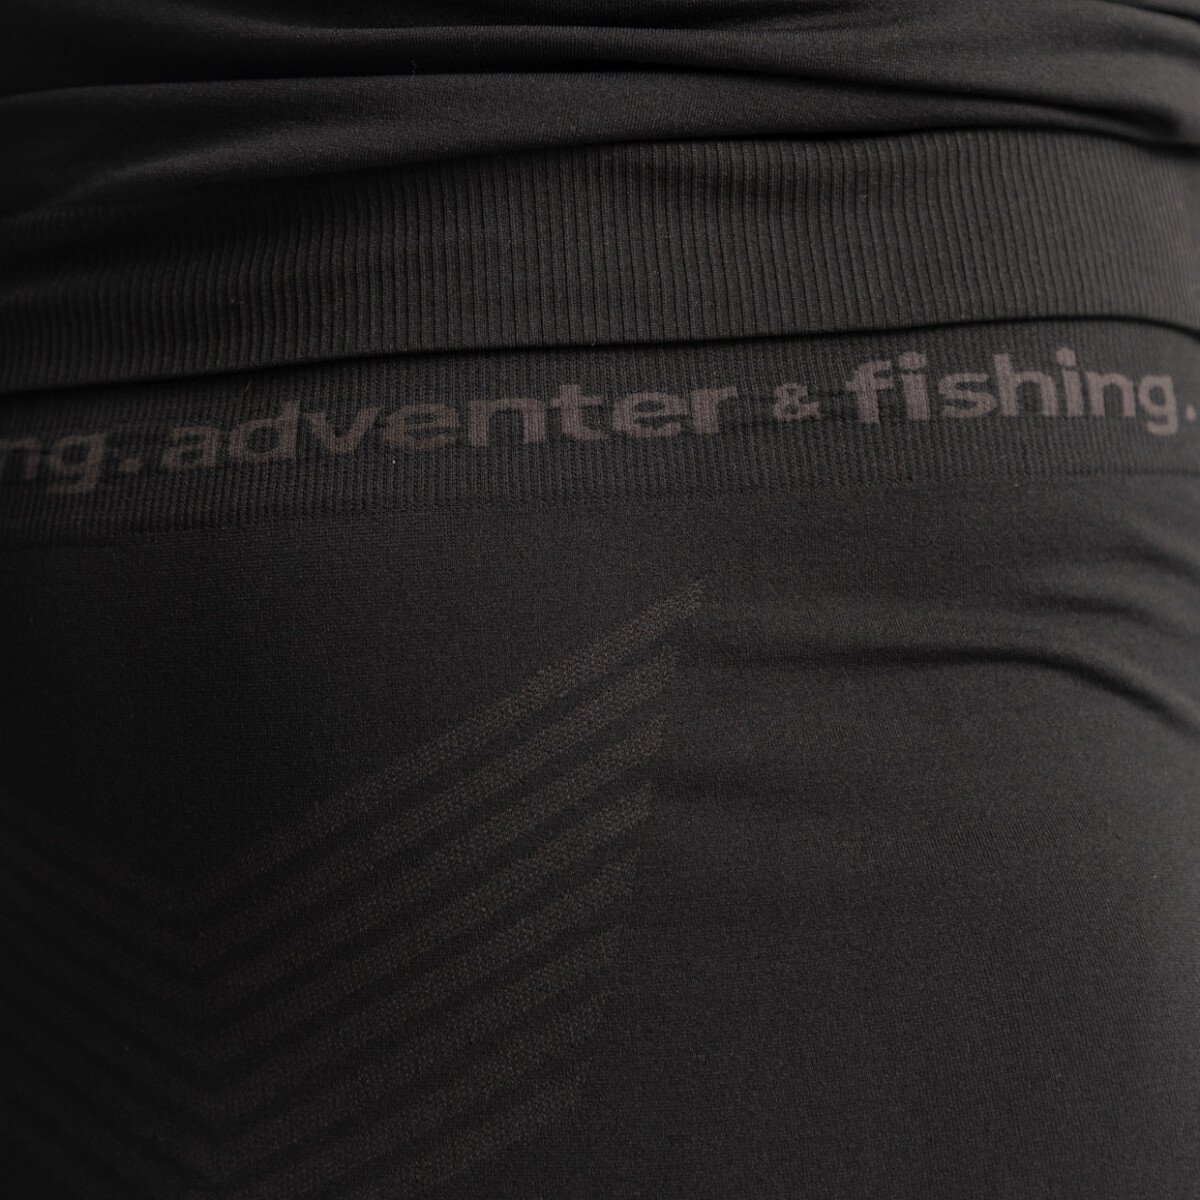 Adventer & fishing Spodní prádlo kalhoty Steel & Black